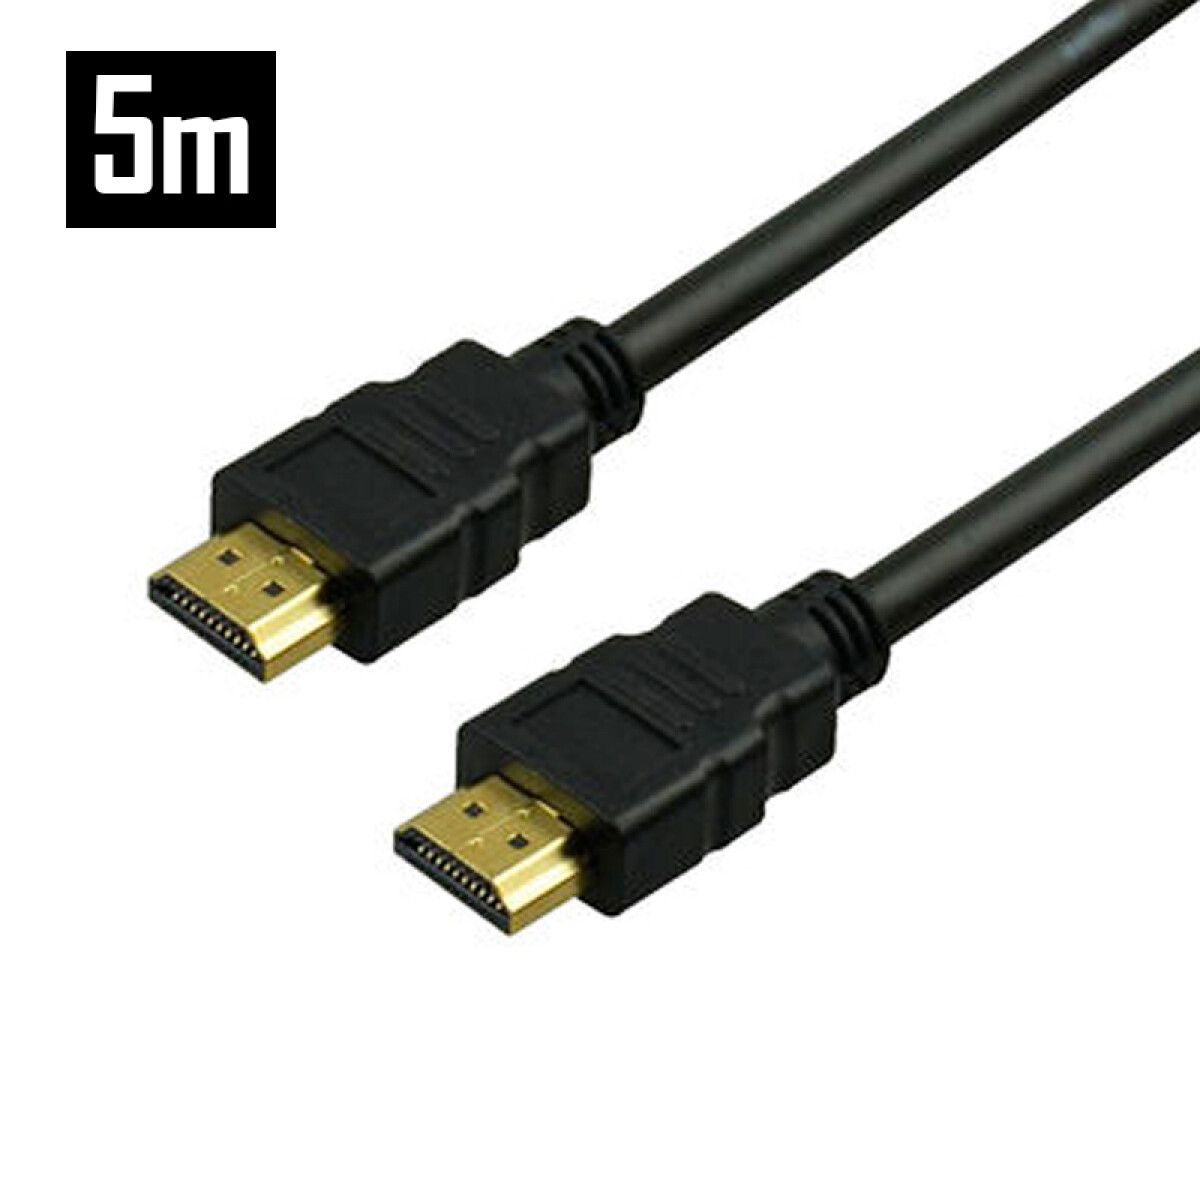 Cable HDMI 4K con filtro reforzado 2.0 5M - Unica 